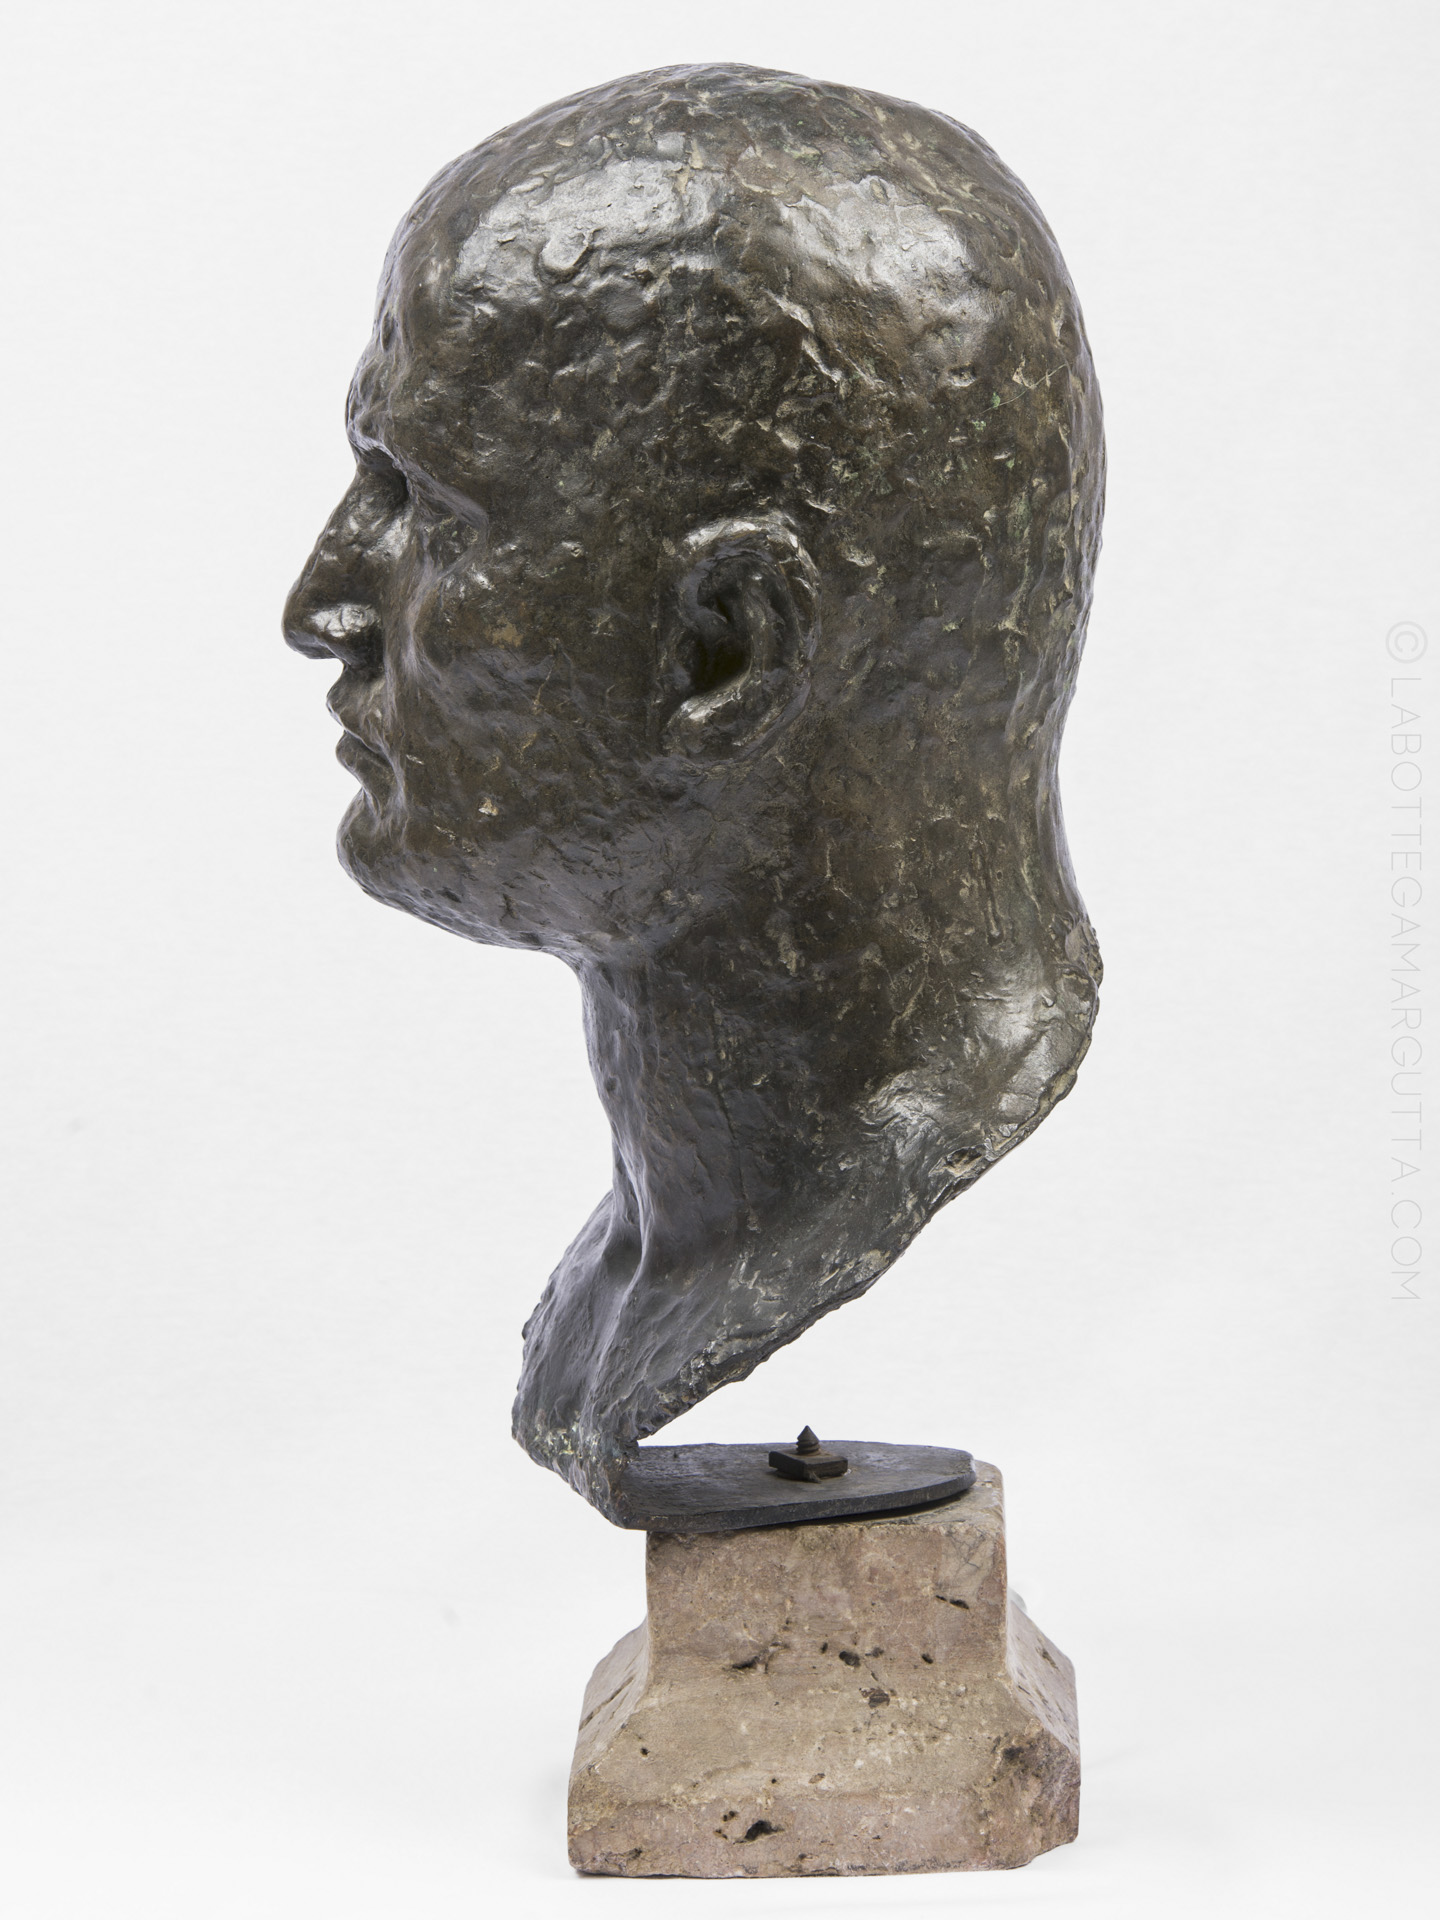 Oggettistica, Busto Mussolini in bronzo